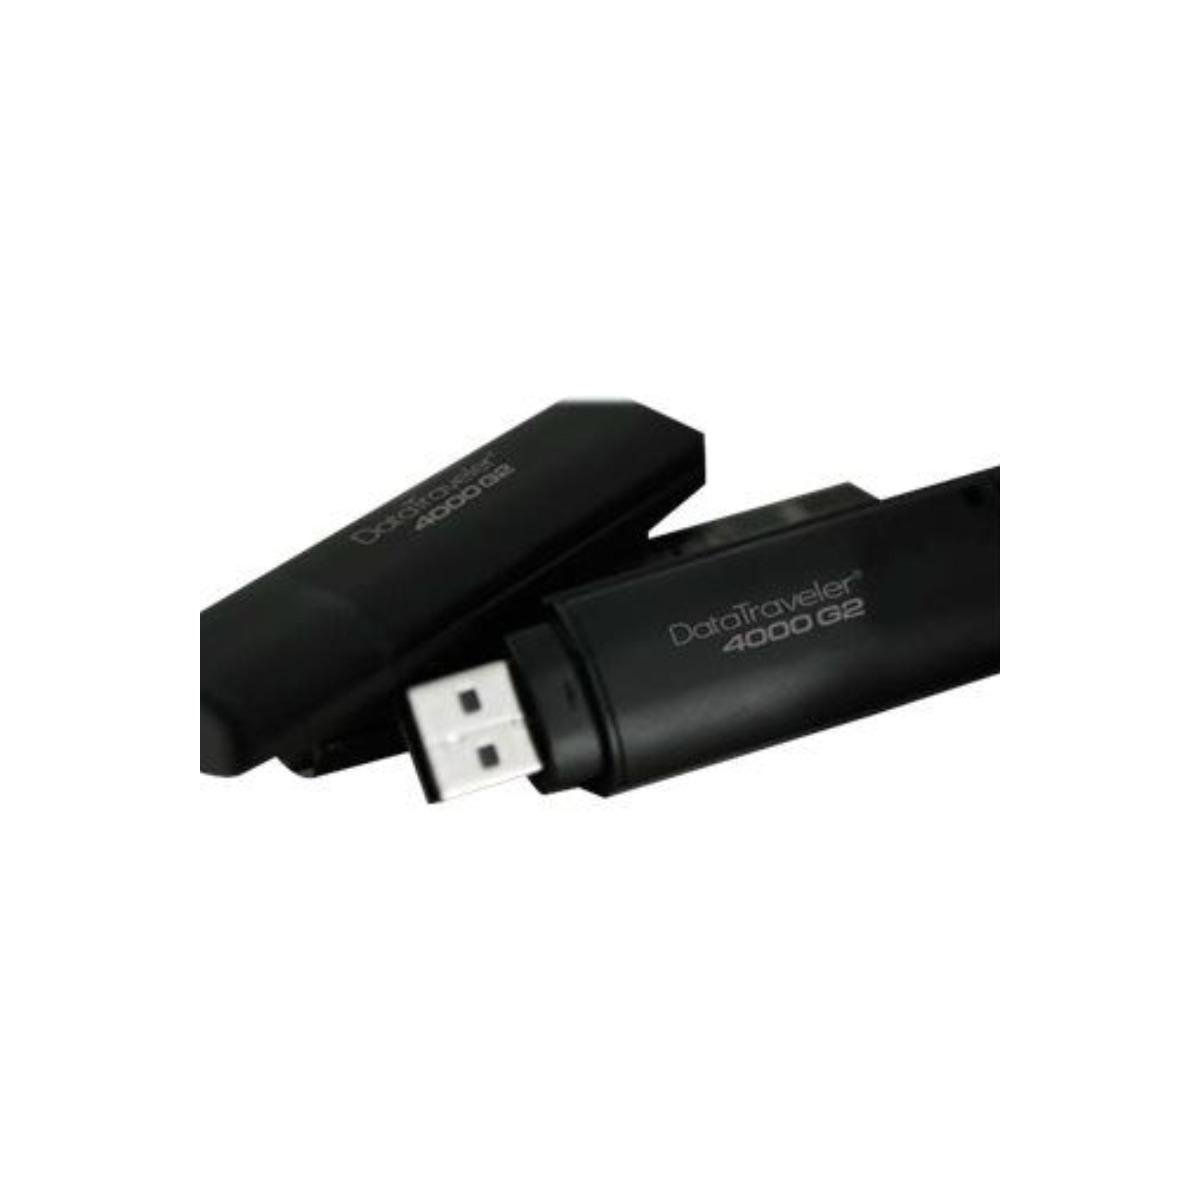 64 USB (Schwarz, GB) KINGSTON DT4000G2DM/64GB Stick